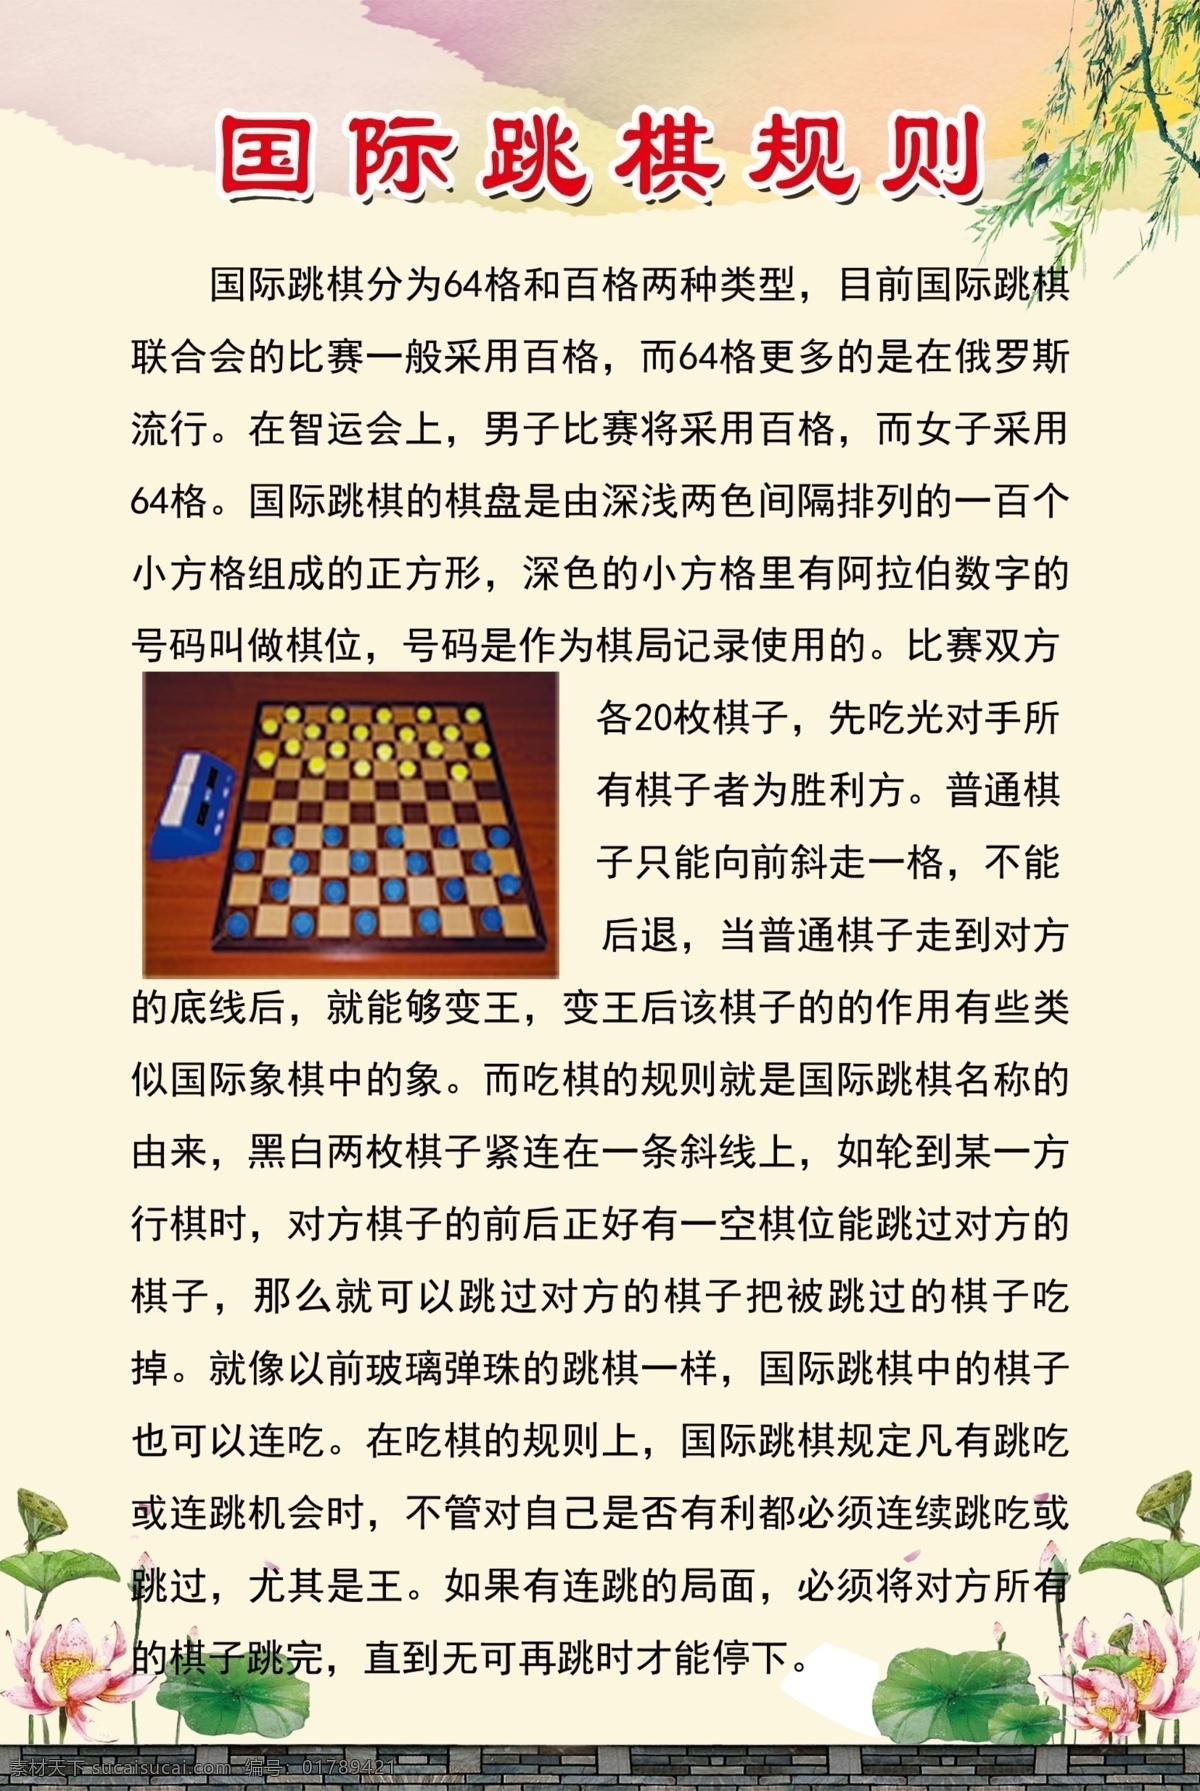 国际跳棋规则 国际跳棋类型 荷花 复古图 柳树条 泼墨图 分层